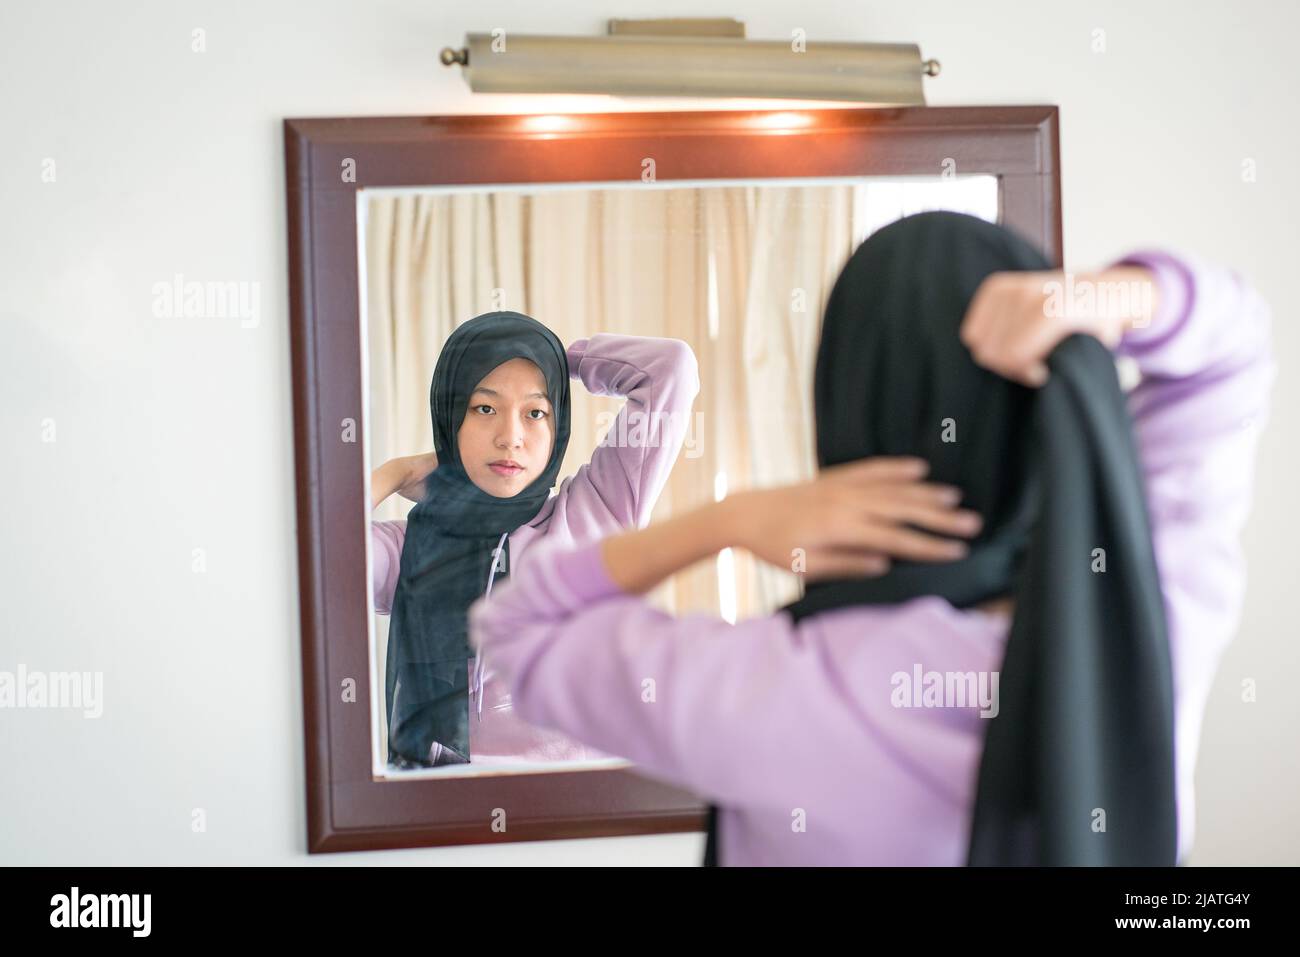 Reflexión sobre un espejo de pared de una mujer musulmana que lleva su pañuelo en la cabeza. Foto de stock